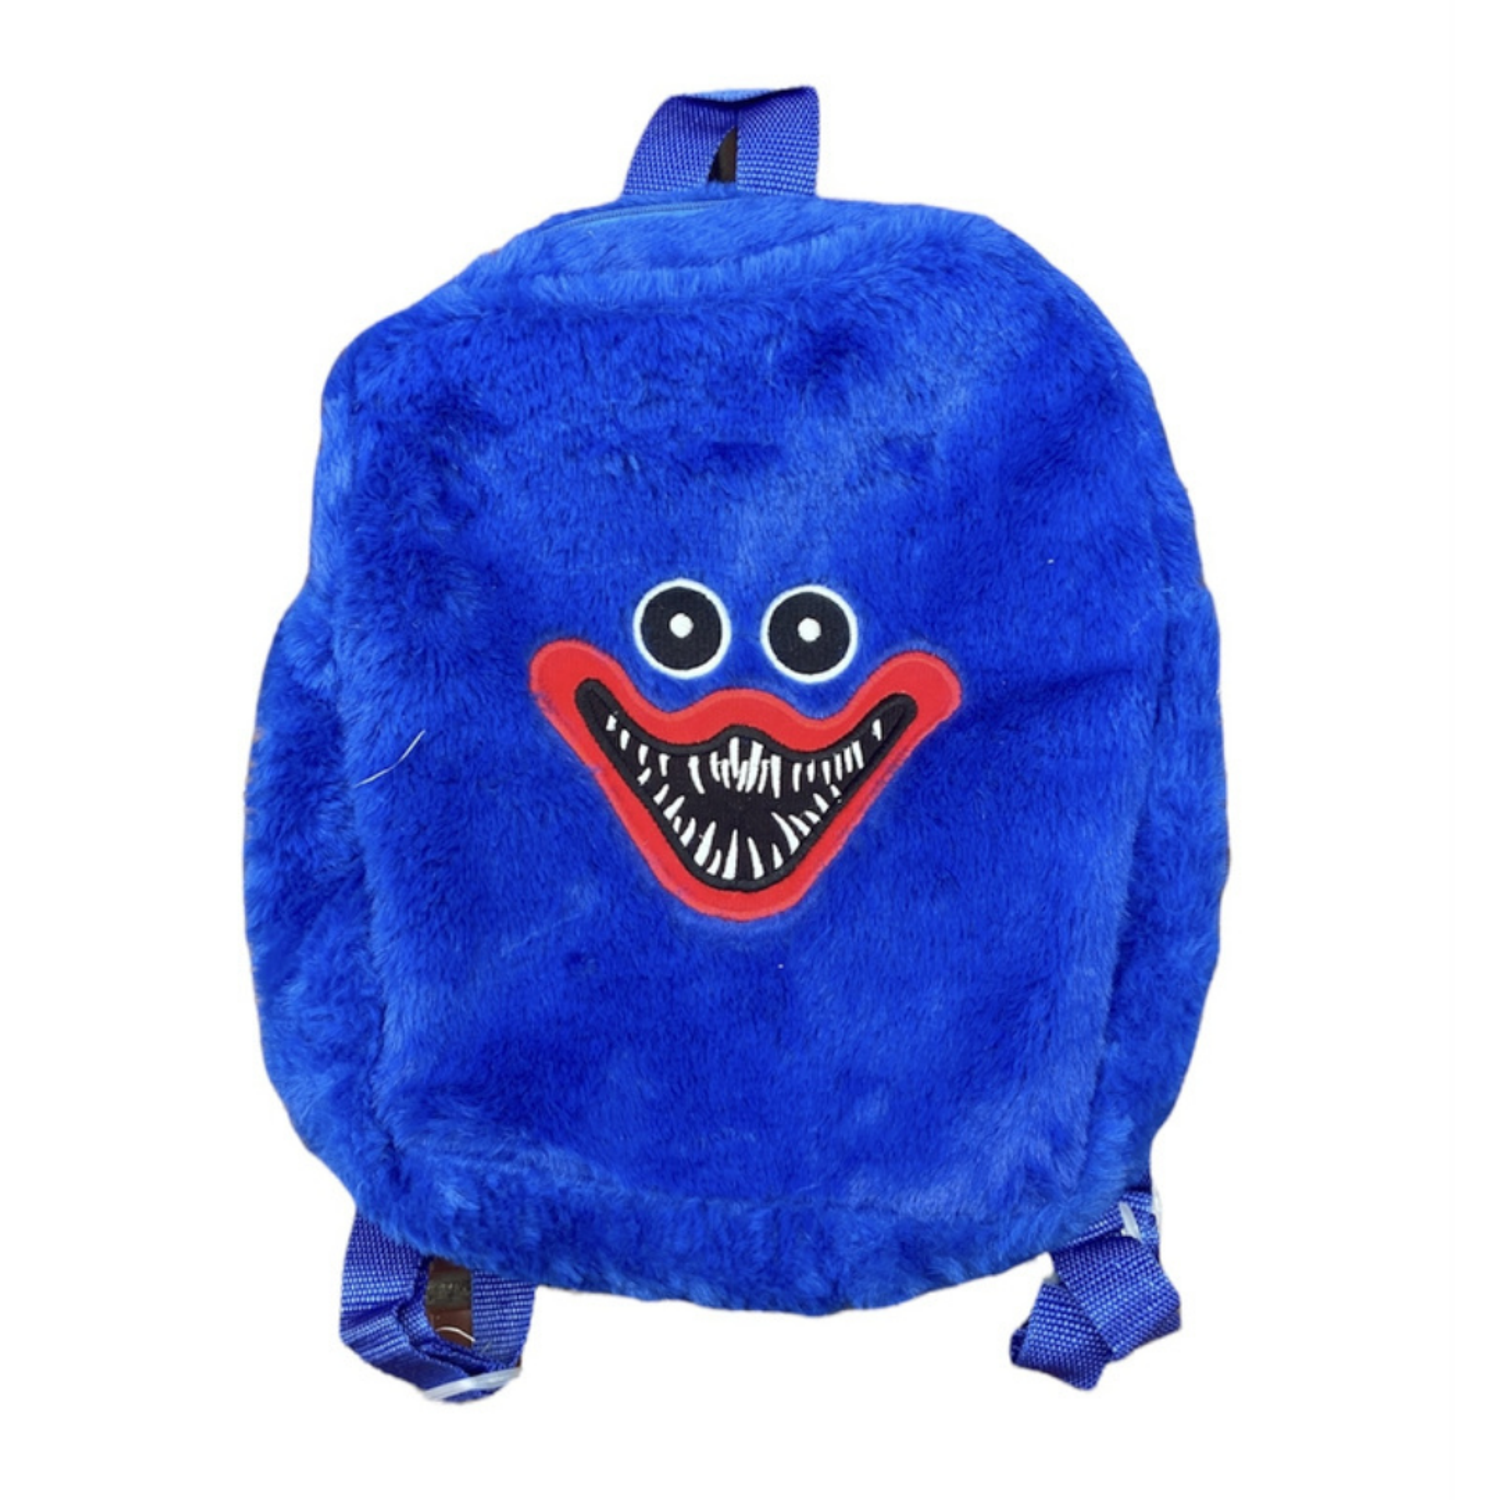 Мягкая игрушка-рюкзак синий Хаги Ваги BalaToys - фото 1